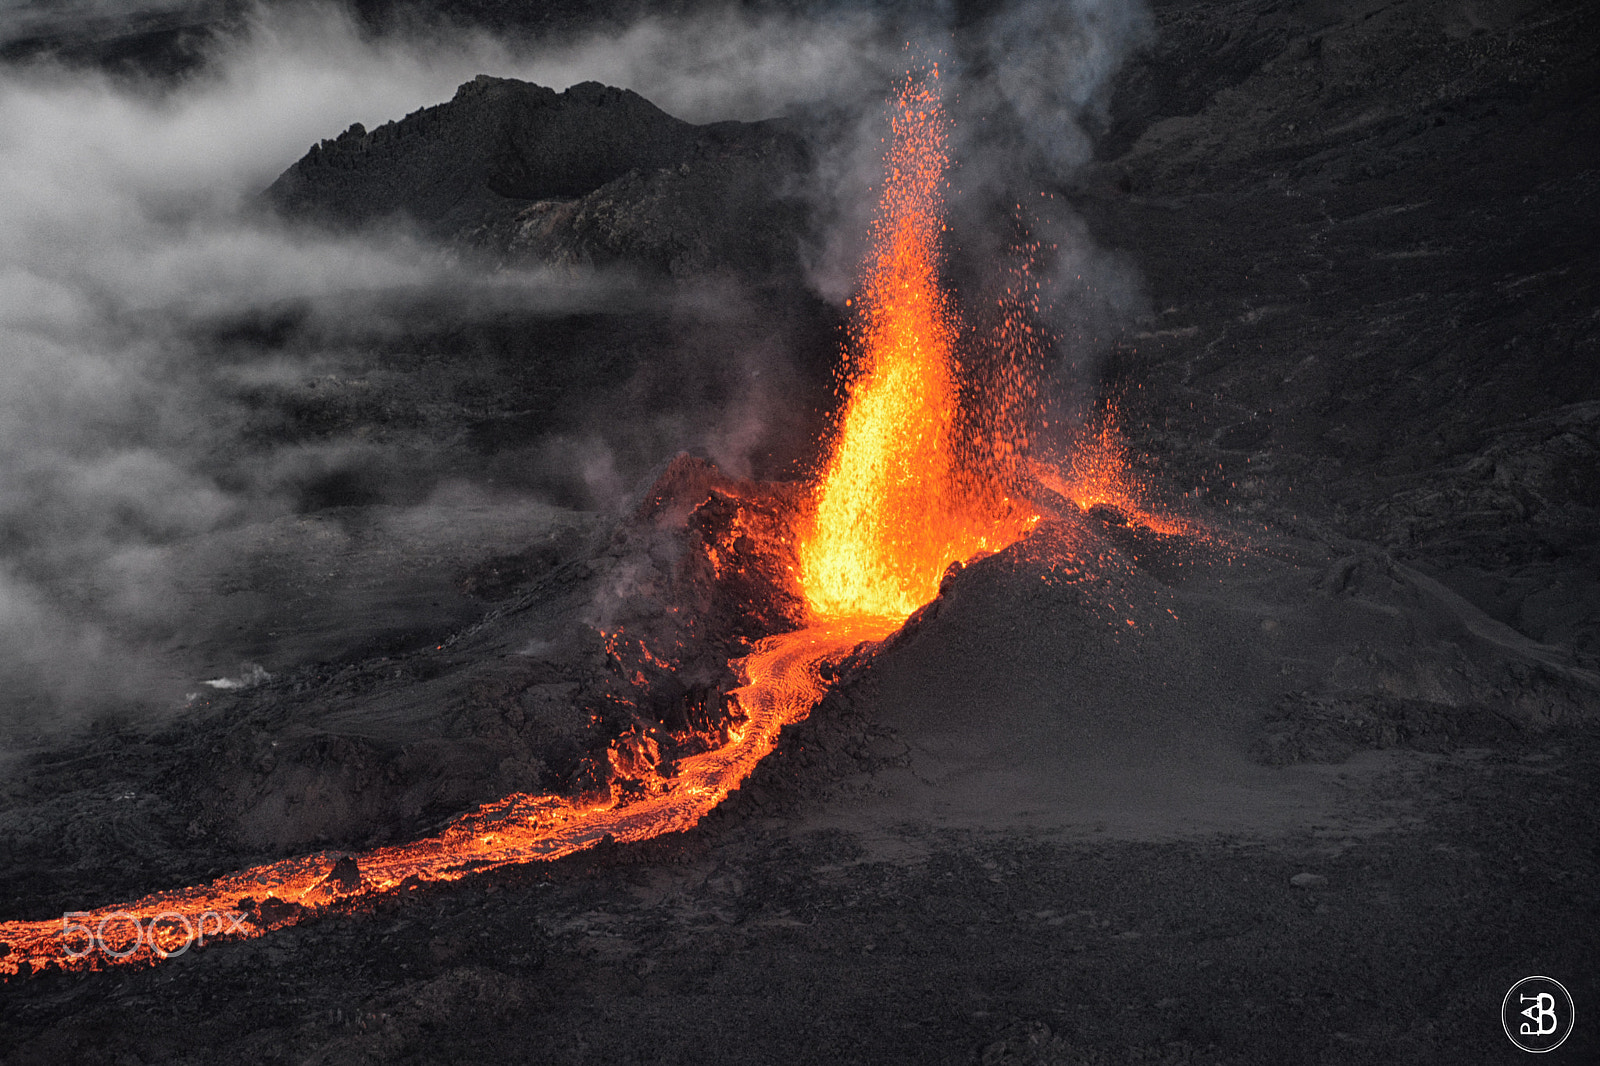 Nikon D7100 + AF Nikkor 20mm f/2.8 sample photo. Volcanic eruption piton de la fournaise 3-09/2016 photography